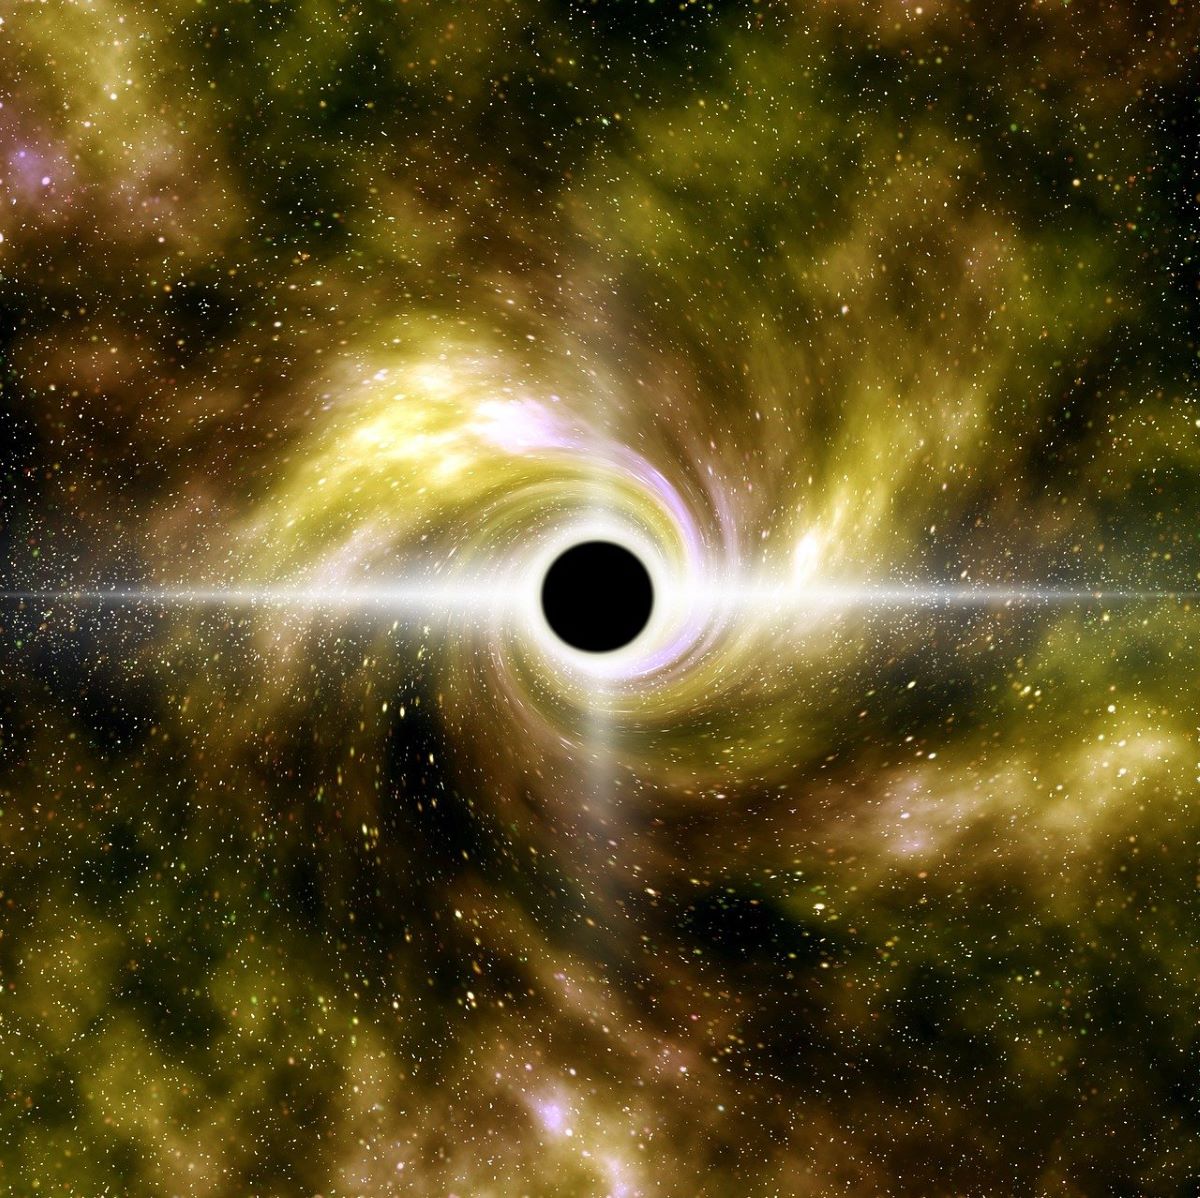 Exploring black holes